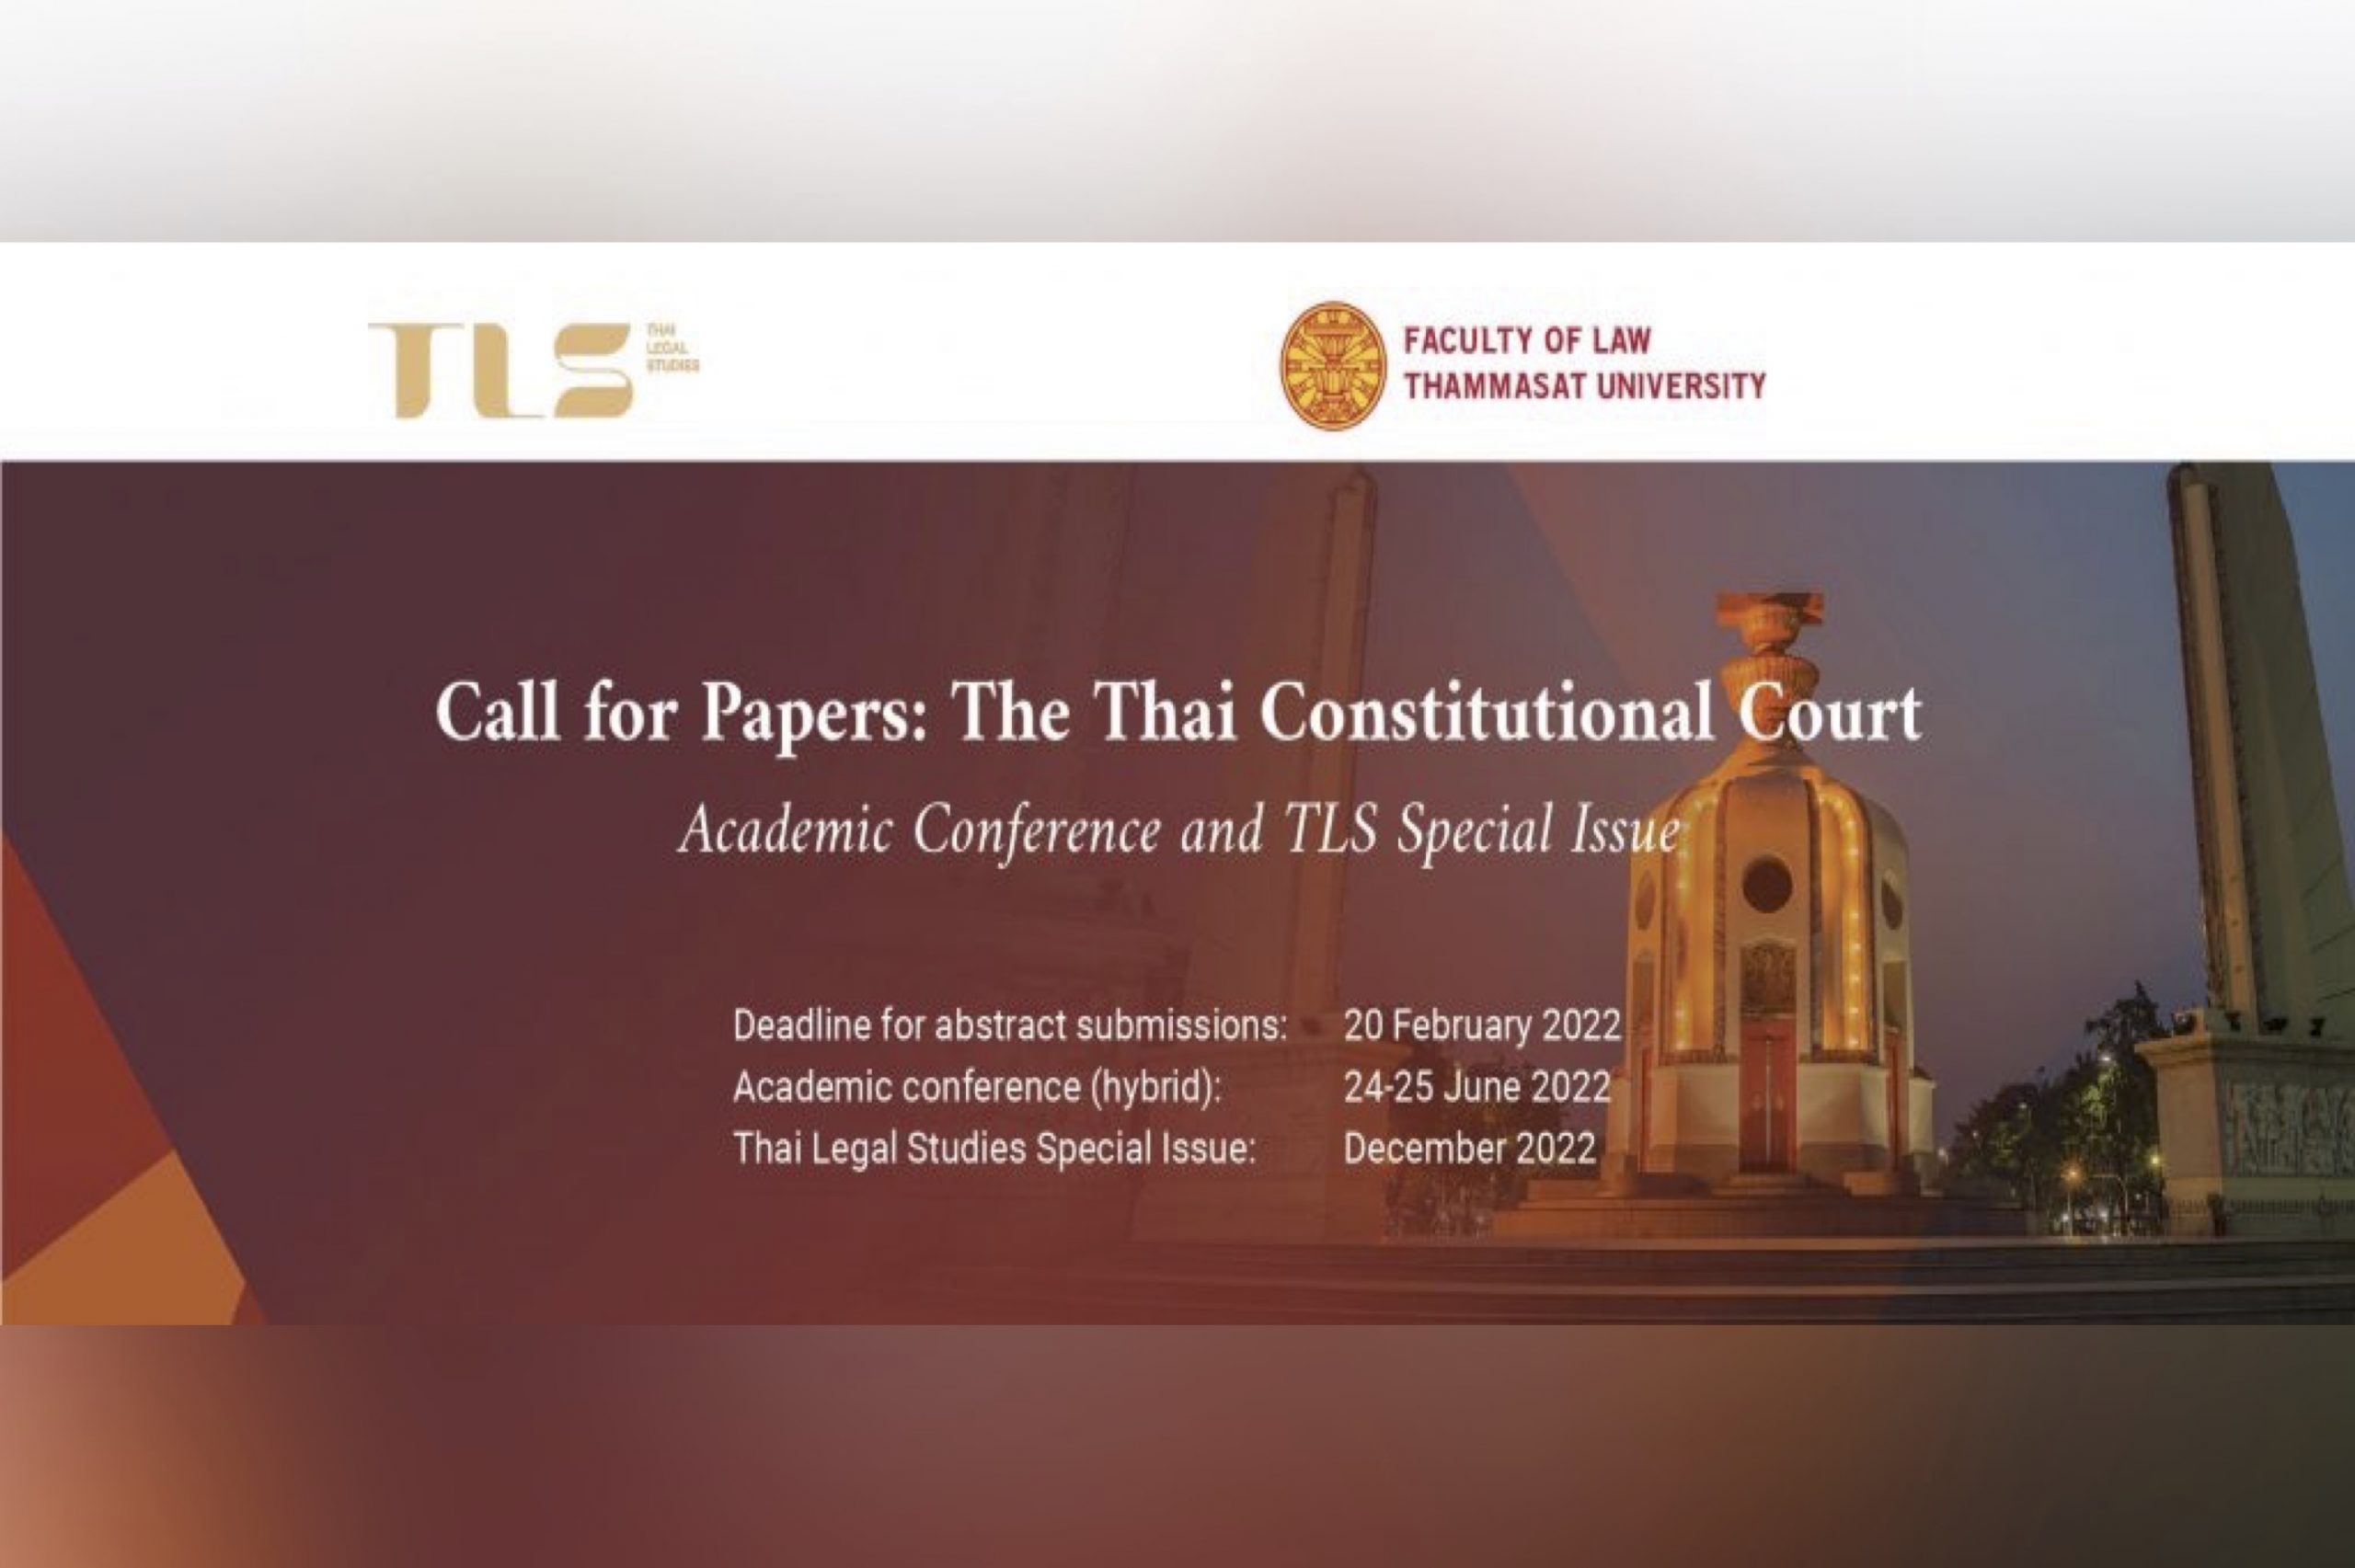 ขอเชิญนำเสนอบทความในงานประชุมวิชาการหัวข้อ The Thai Constitutional Court: Recent Jurisprudence and Controversies”